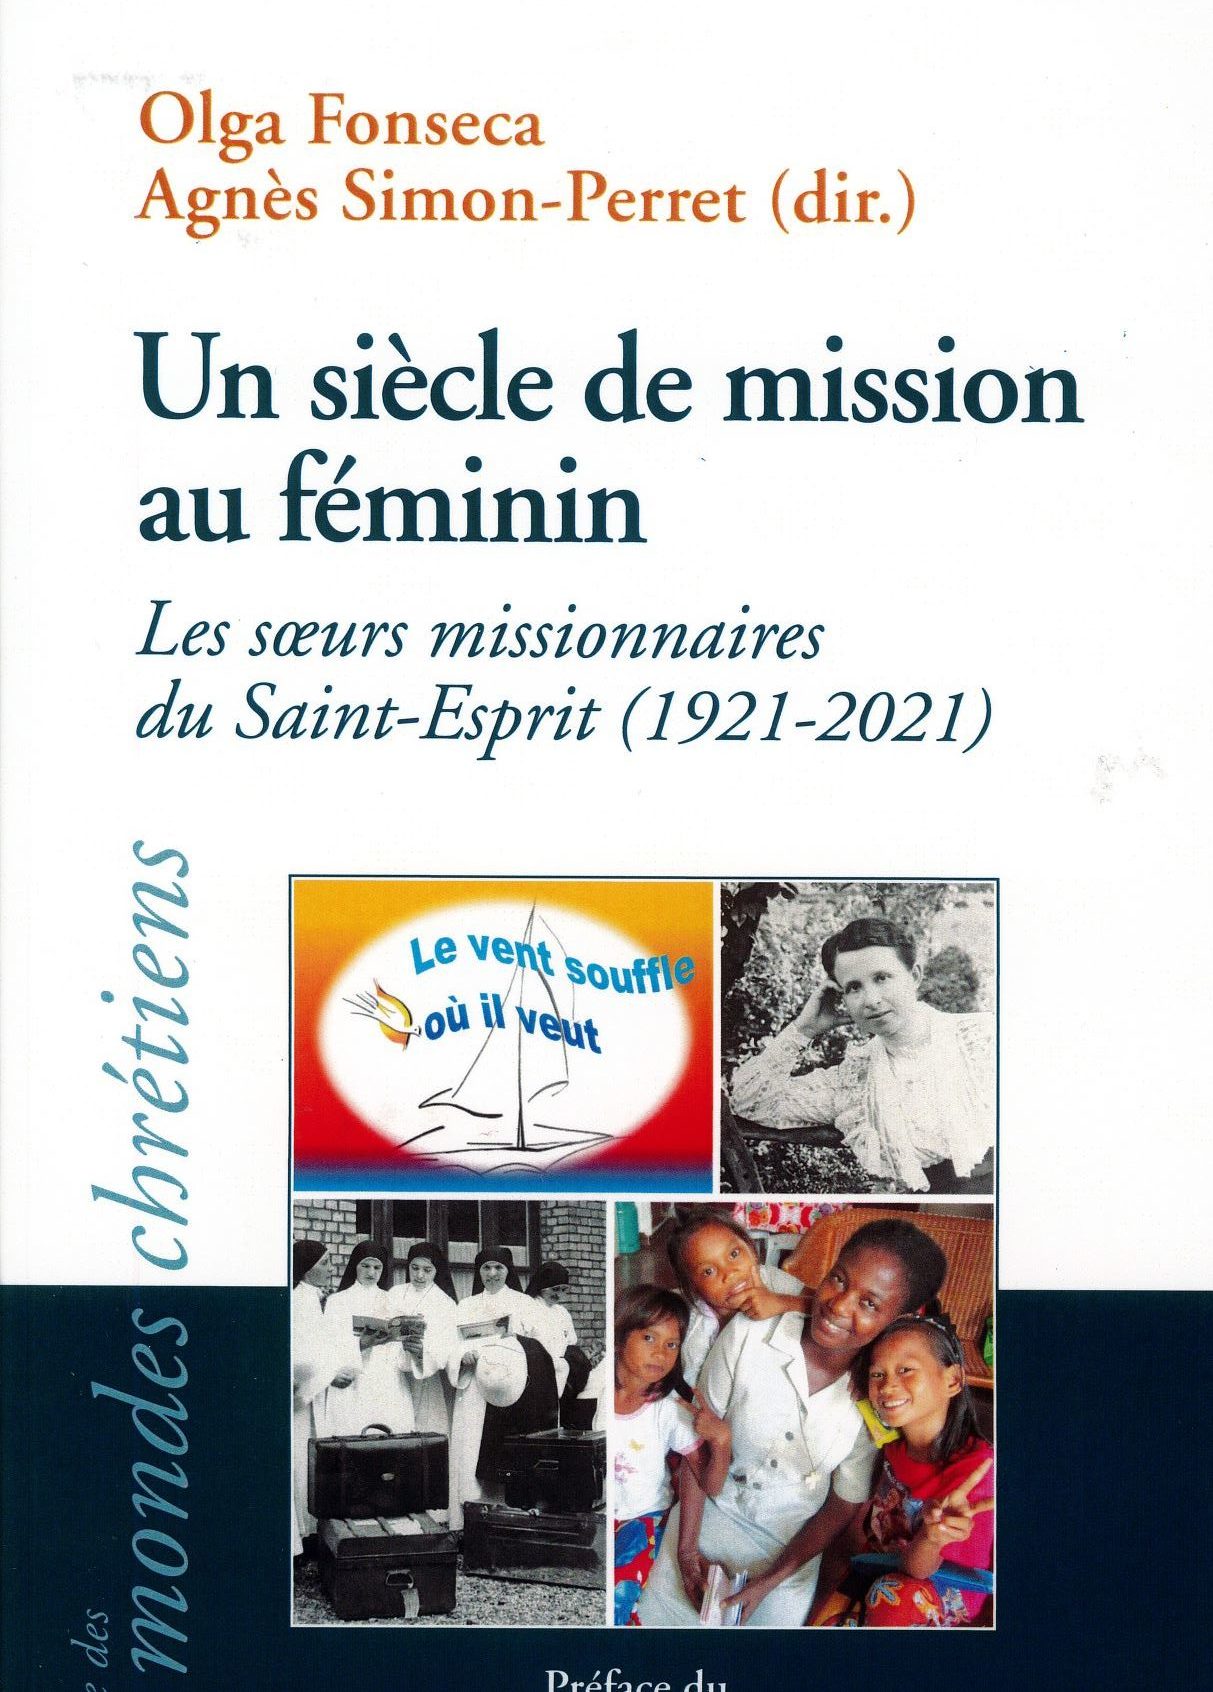 Lire la suite à propos de l’article Les soeurs missionnaires du Saint-Esprit publie “un siècle de mission au féminin”